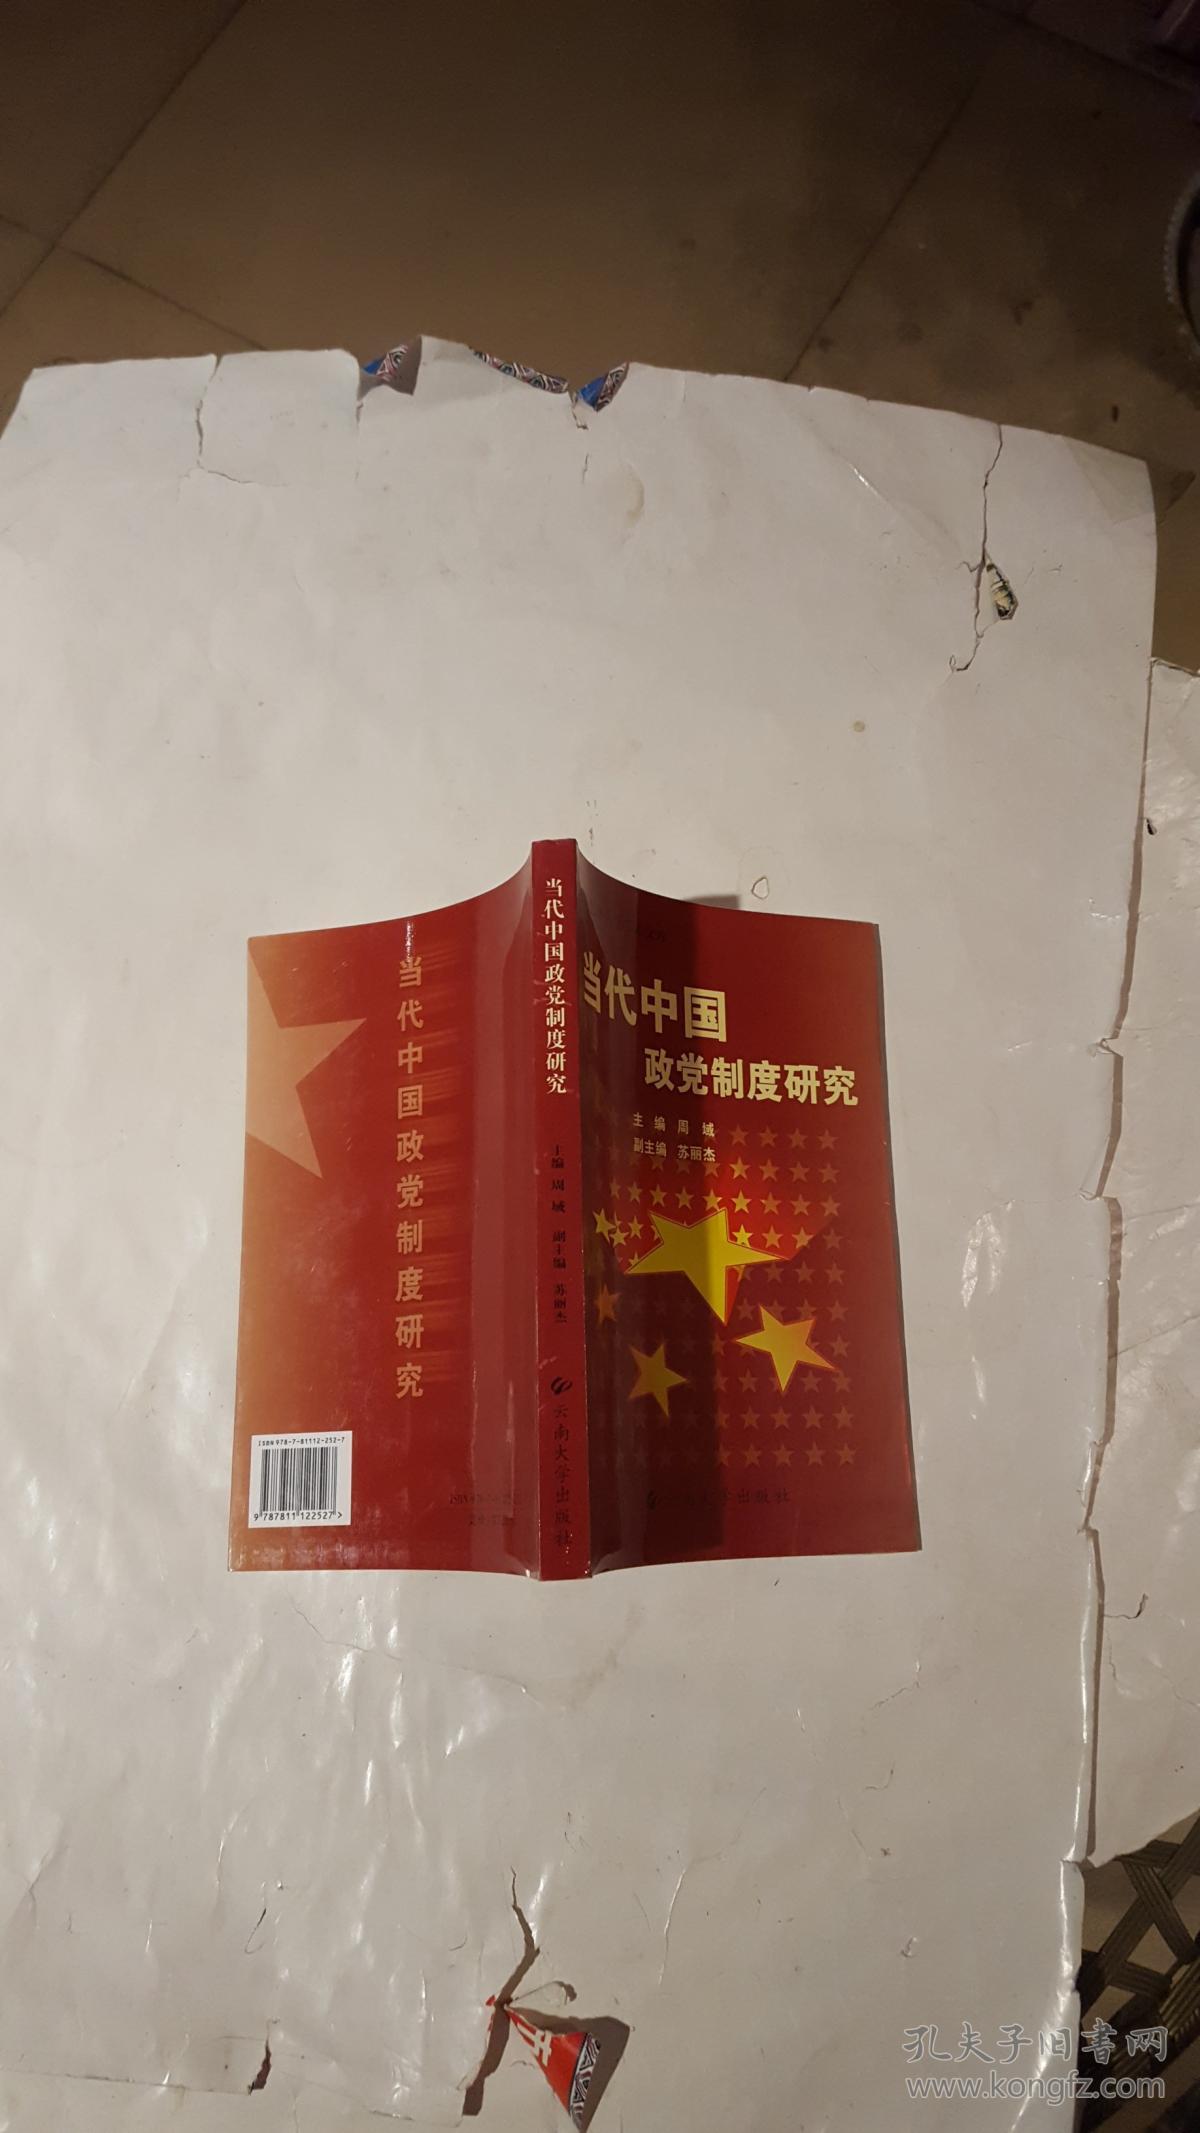 当代中国政党制度研究